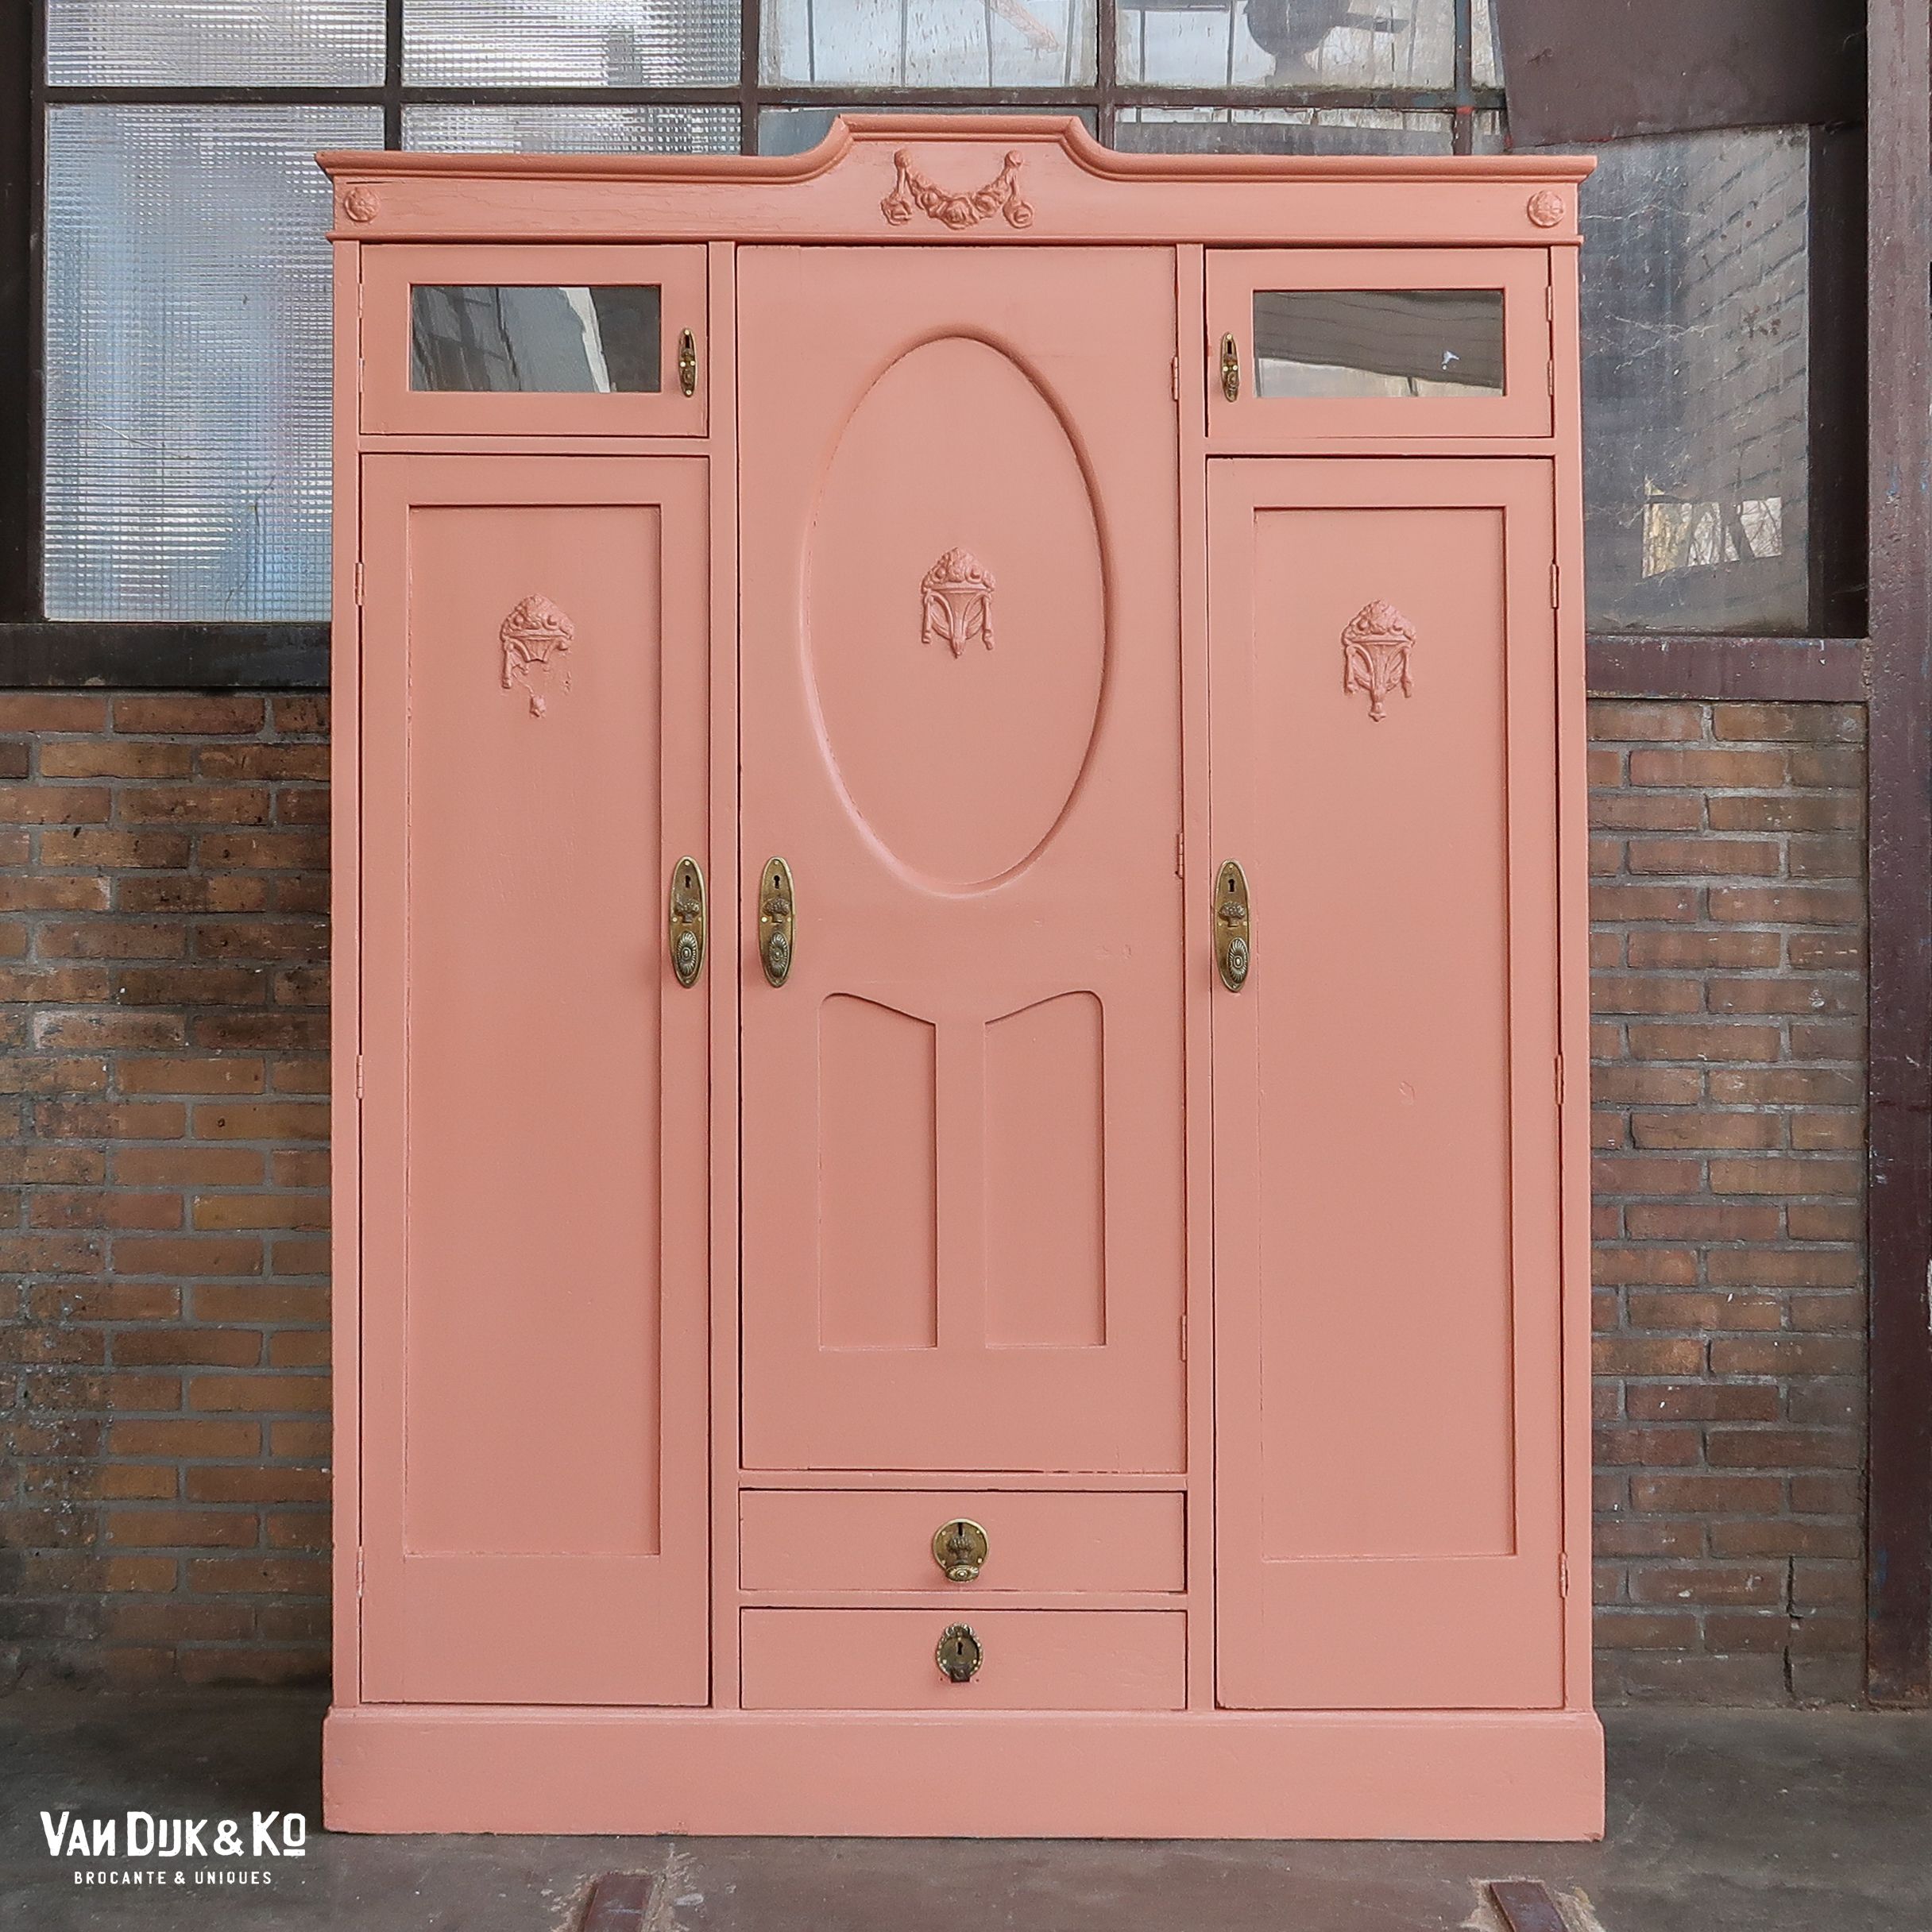 roze kledingkast » Van Dijk Ko